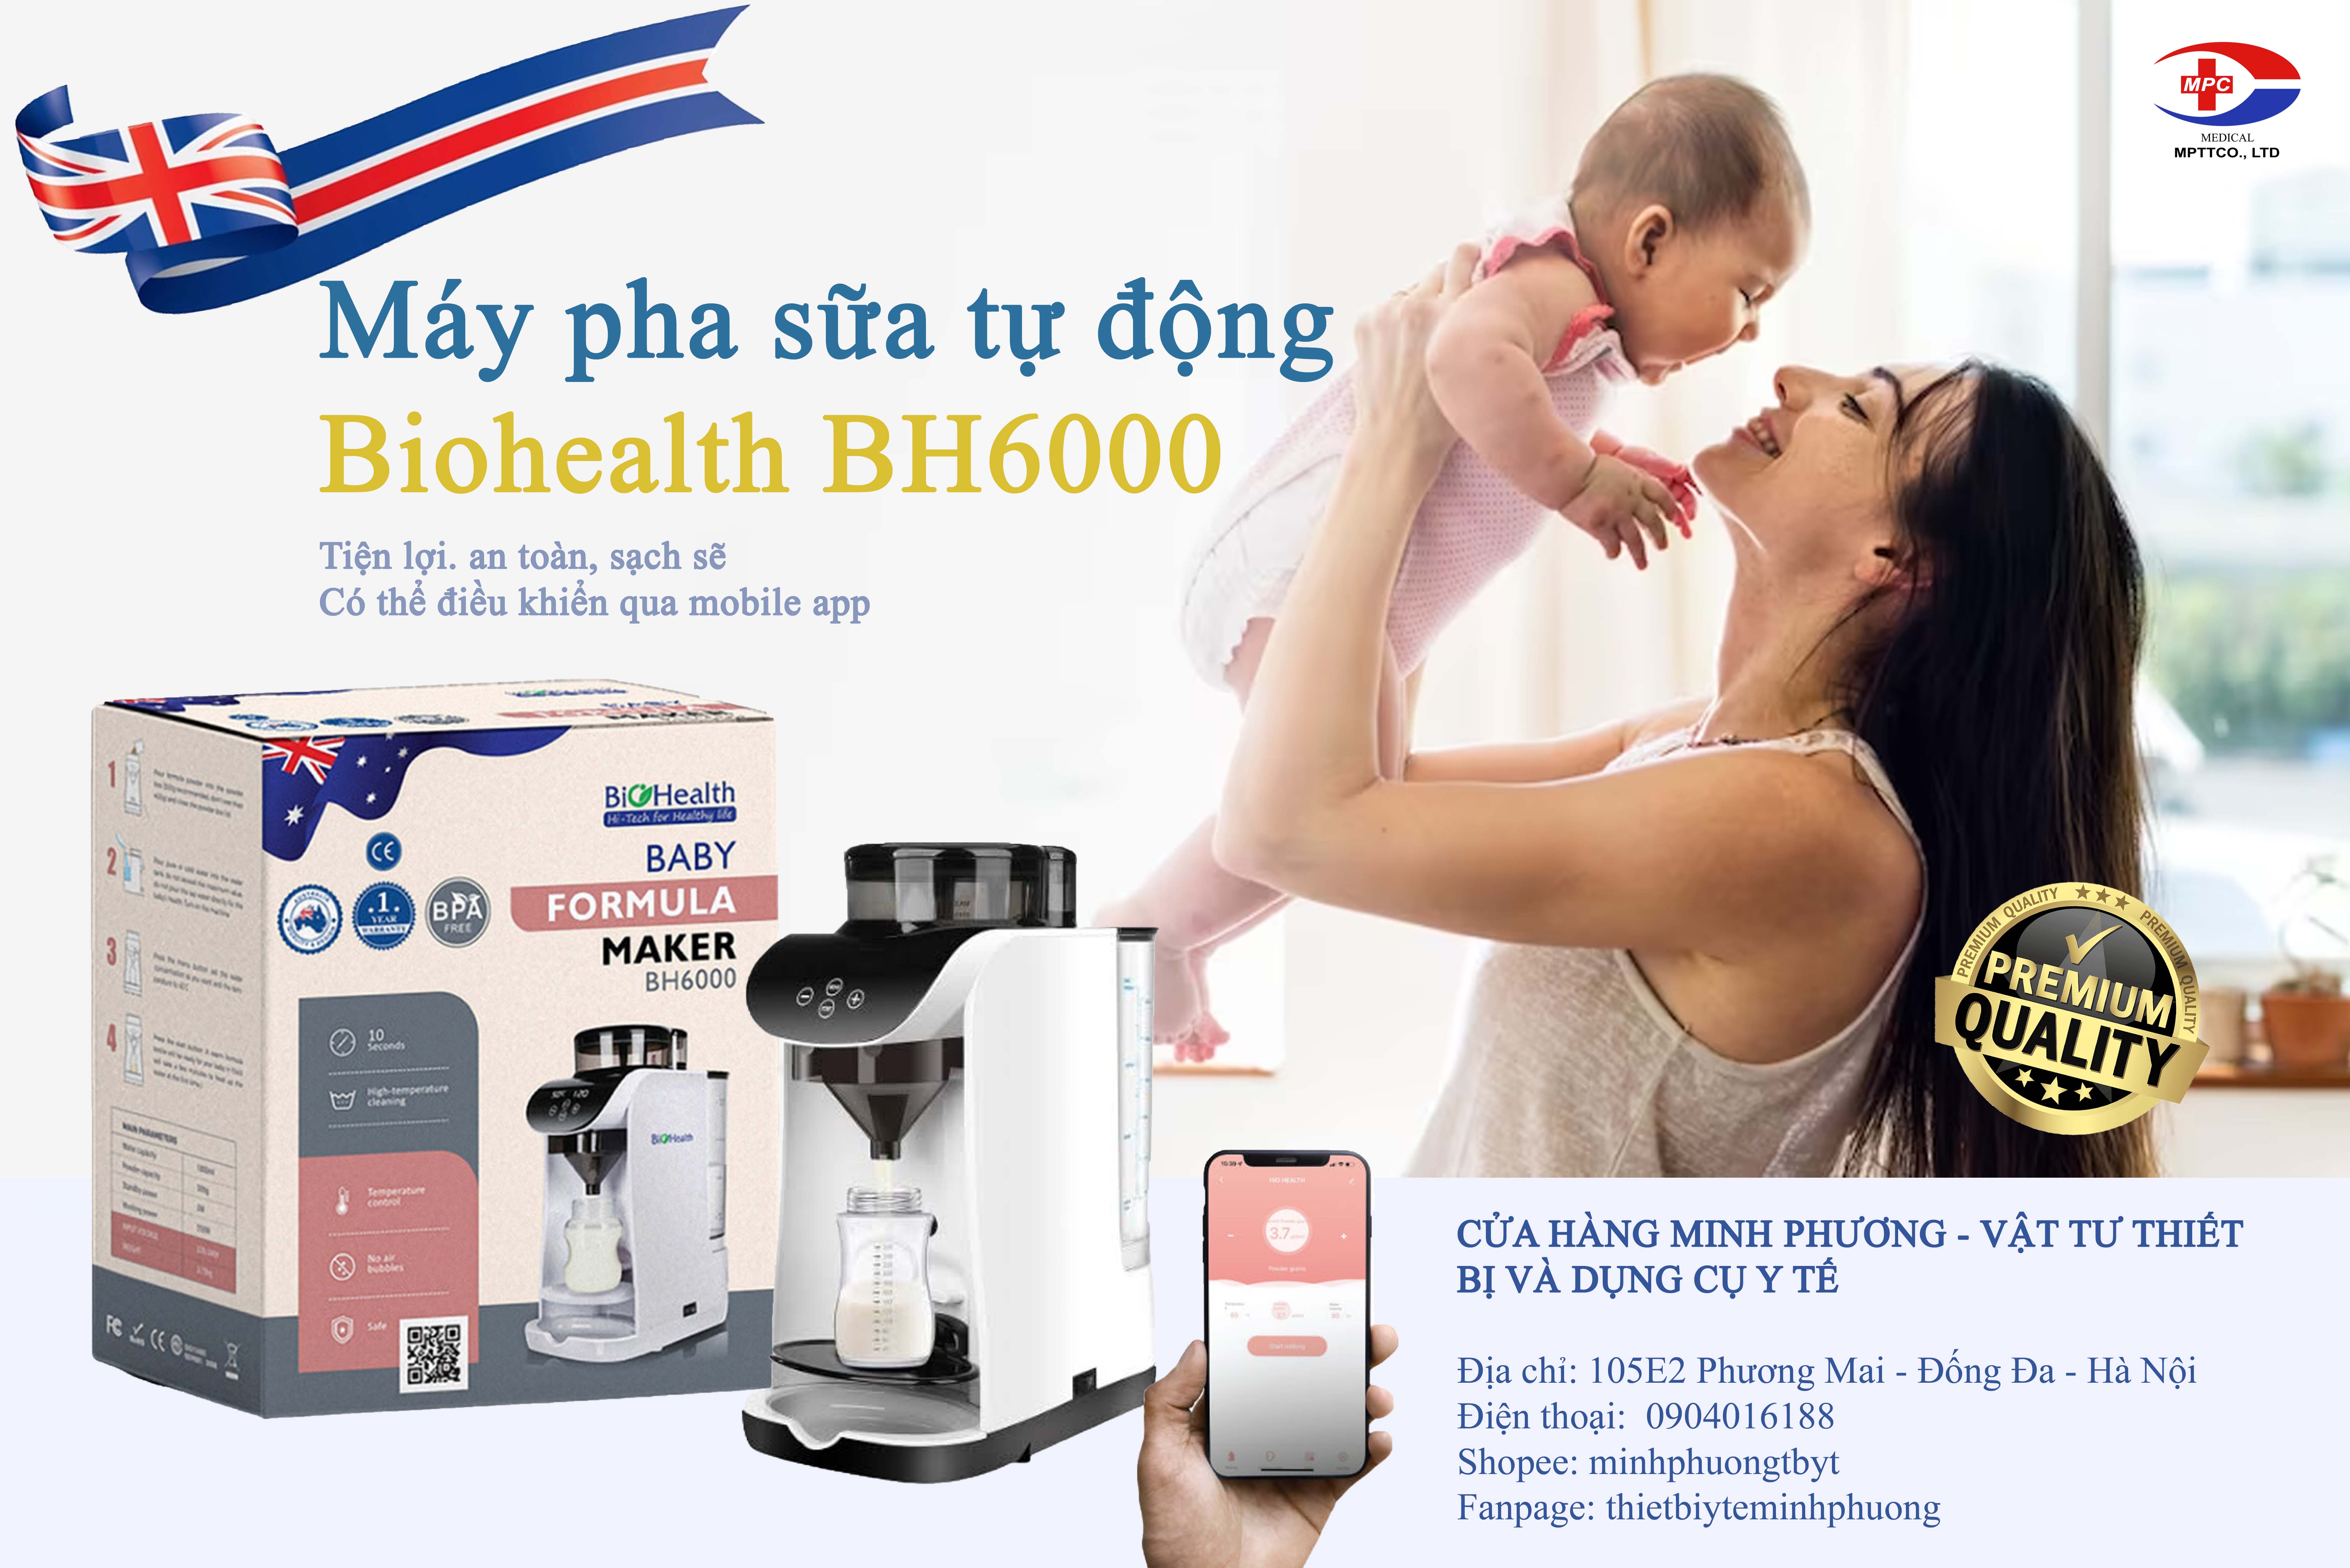 Giới thiệu máy pha sữa tự động Biohealth BH6000